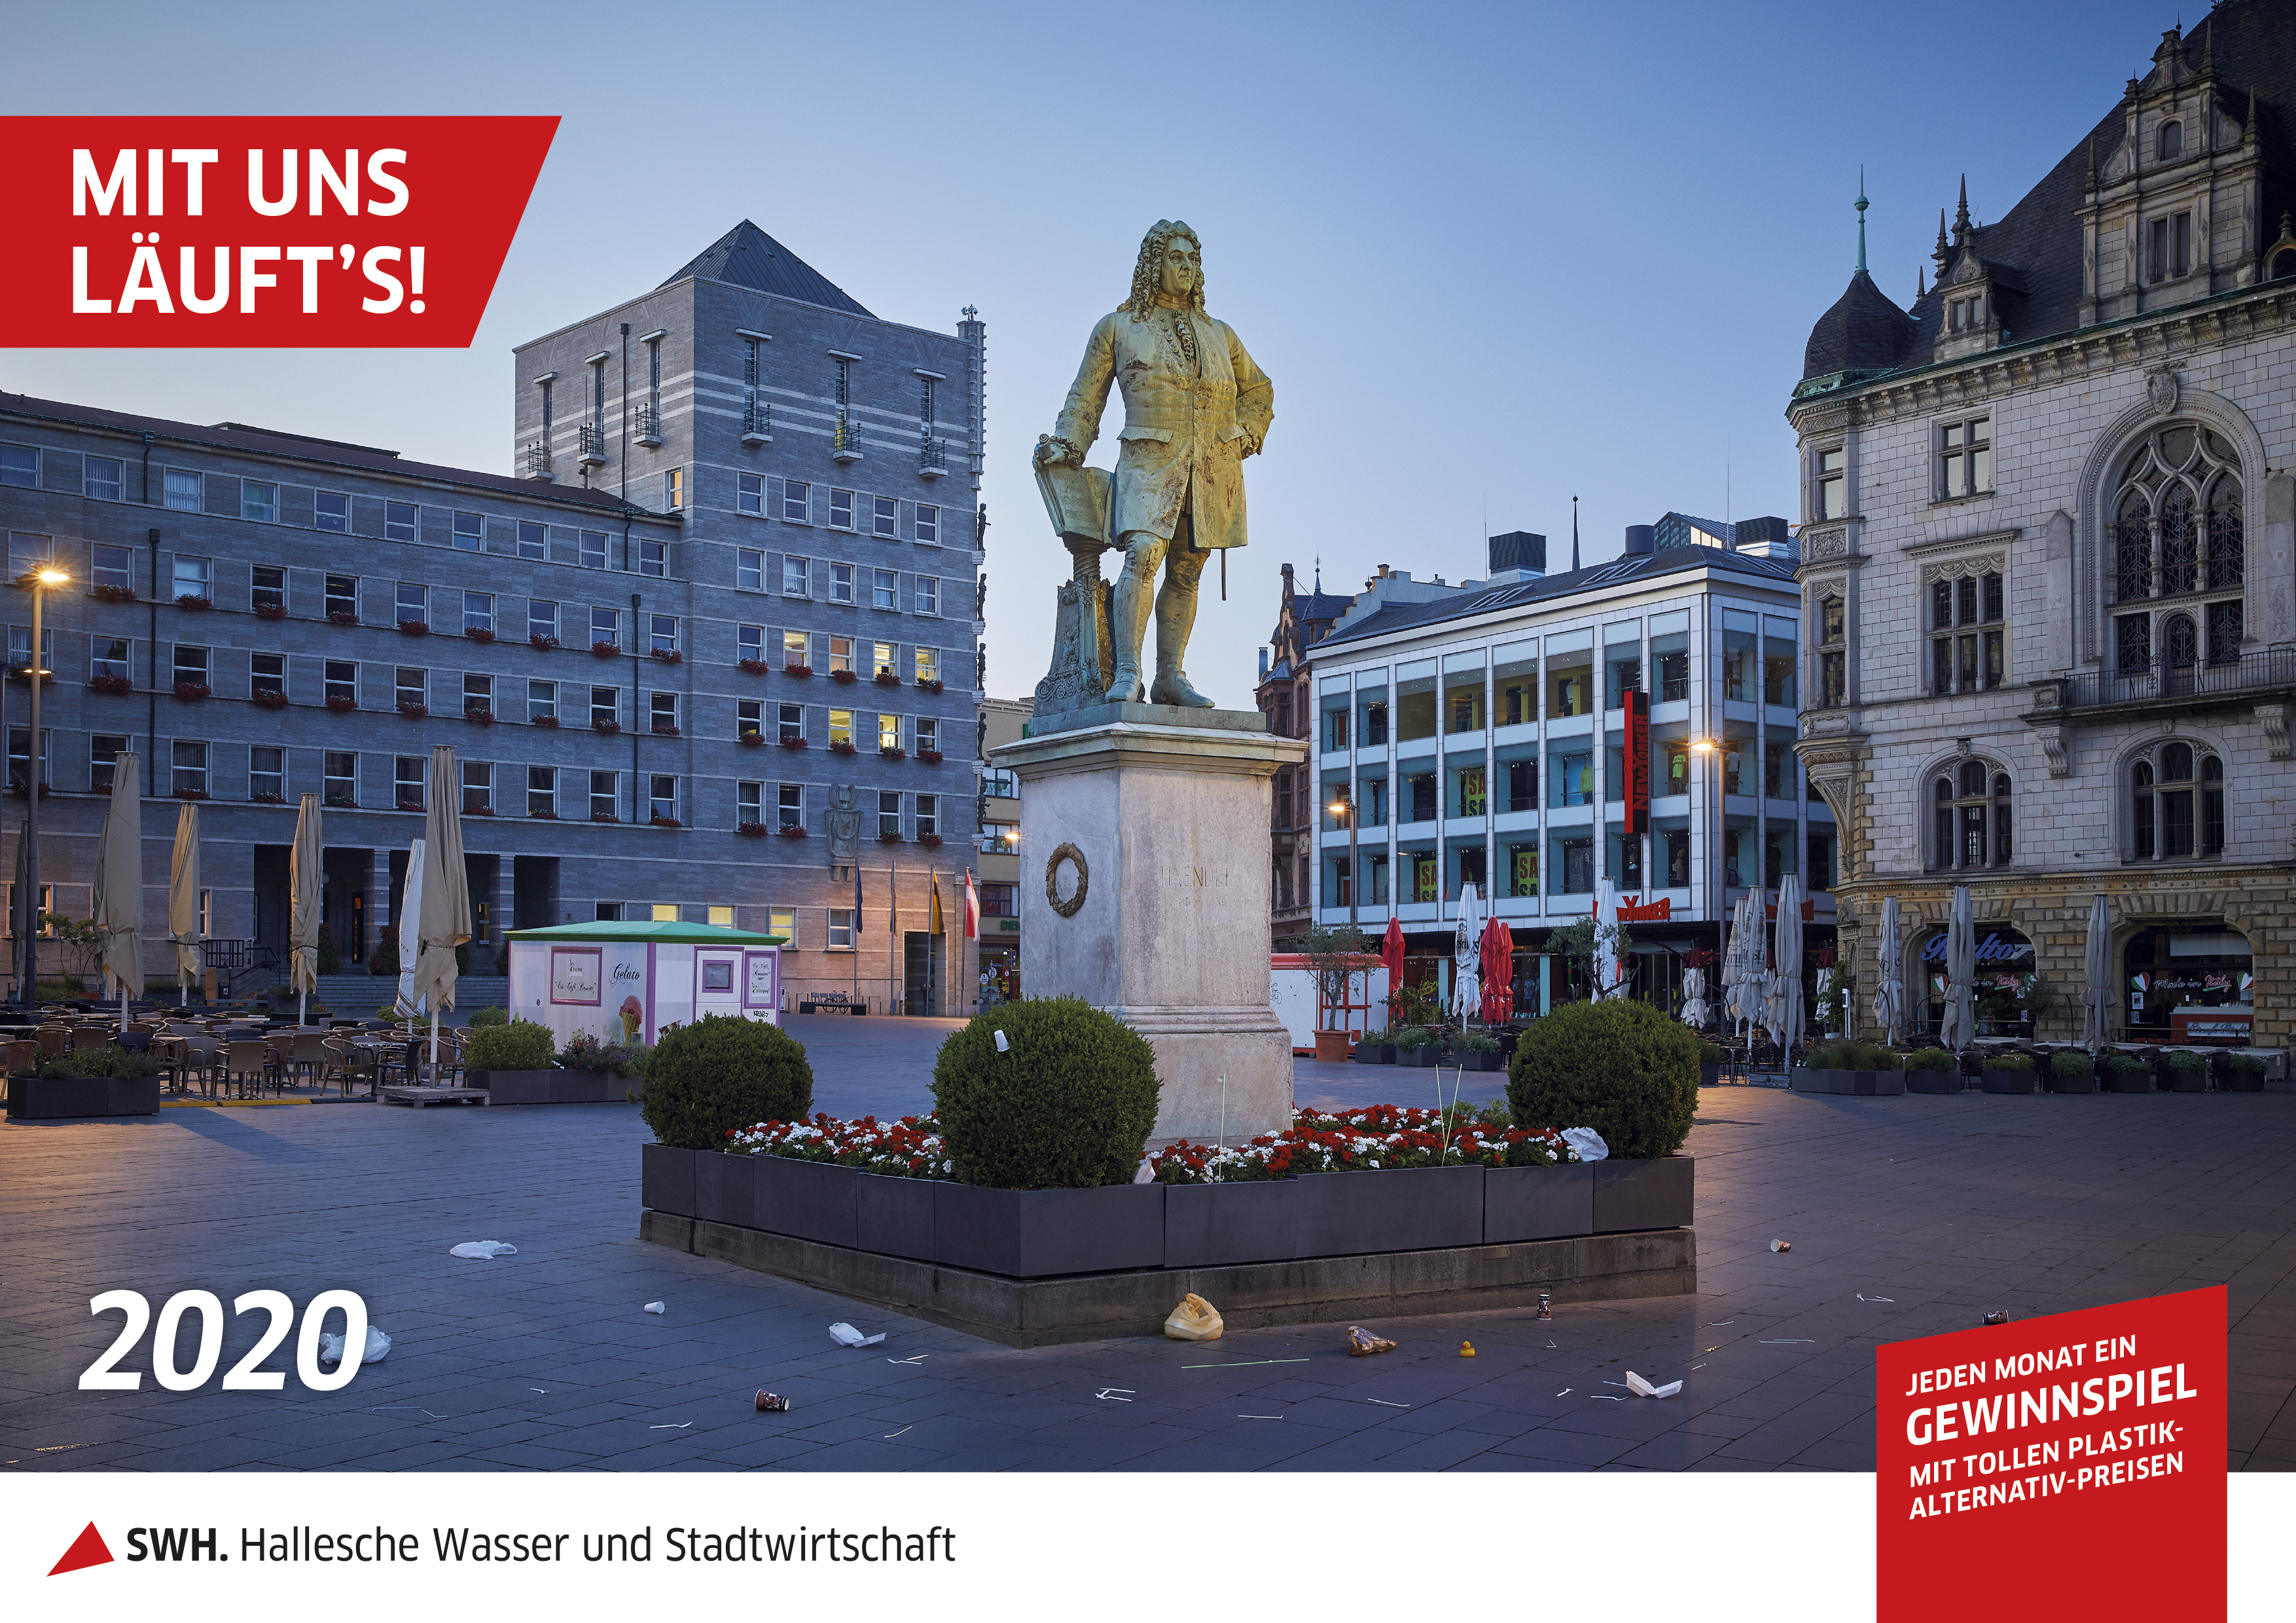 Auf dem Bild ist der neue HWS-Kalender für 2020 abgebildet, das Motiv ist das Händeldenkmal auf dem halleschen Marktplatz.